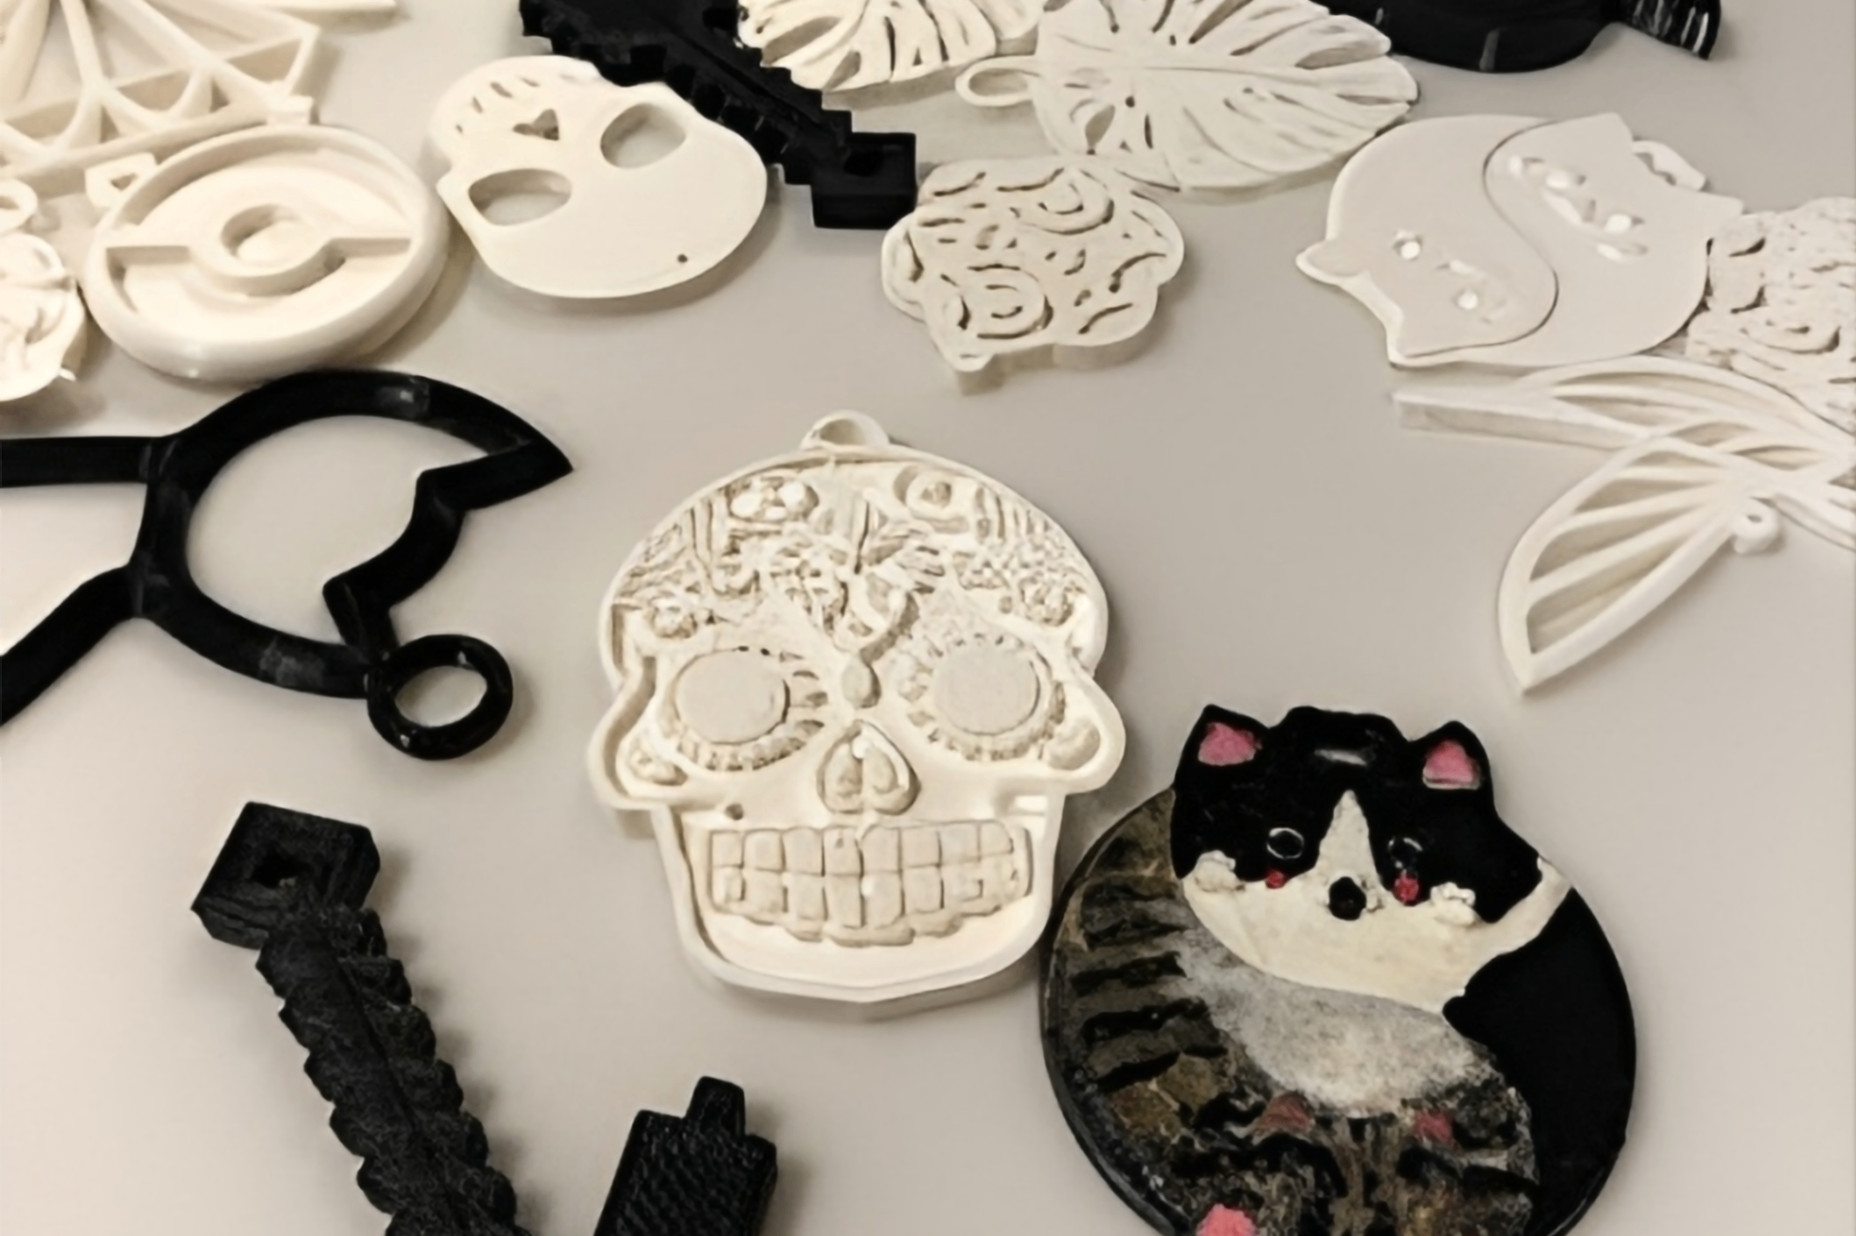 3D-tulostettu korupääkallo ja kissakoru pöydällä